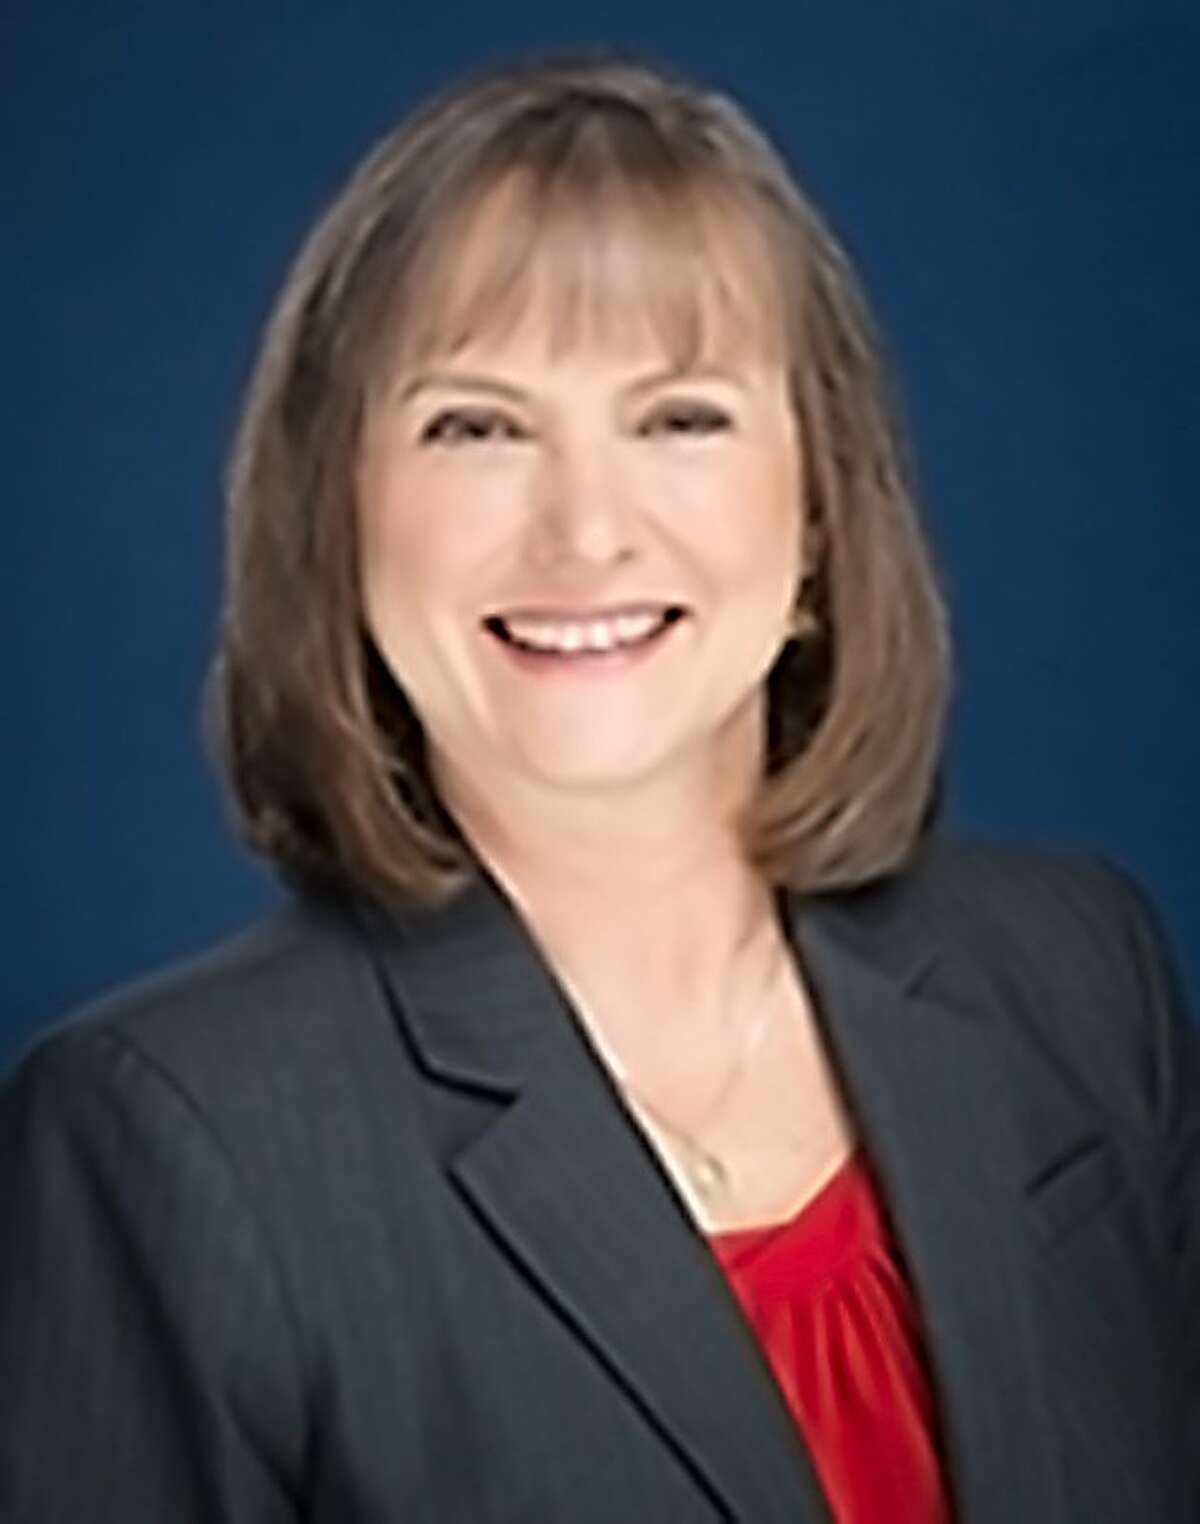 DeAnn Walker, Public Utilities Chairwoman